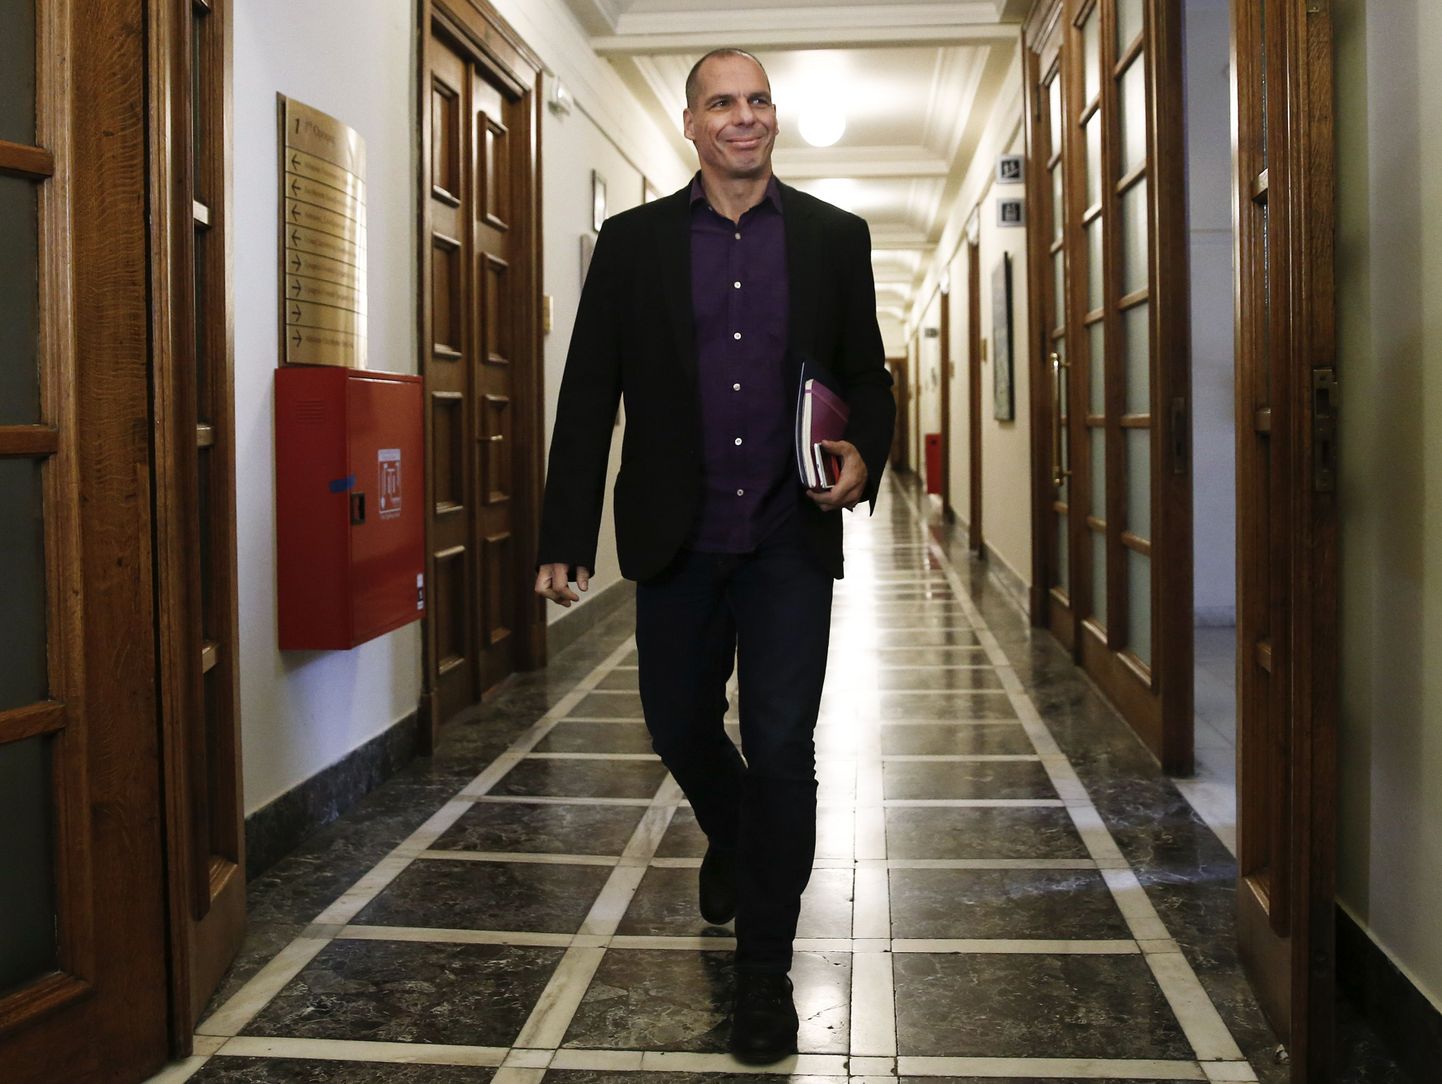 Kreeka rahandusminister Yanis Varoufakis jäeti läbirääkimiskomisjoni ukse taha.